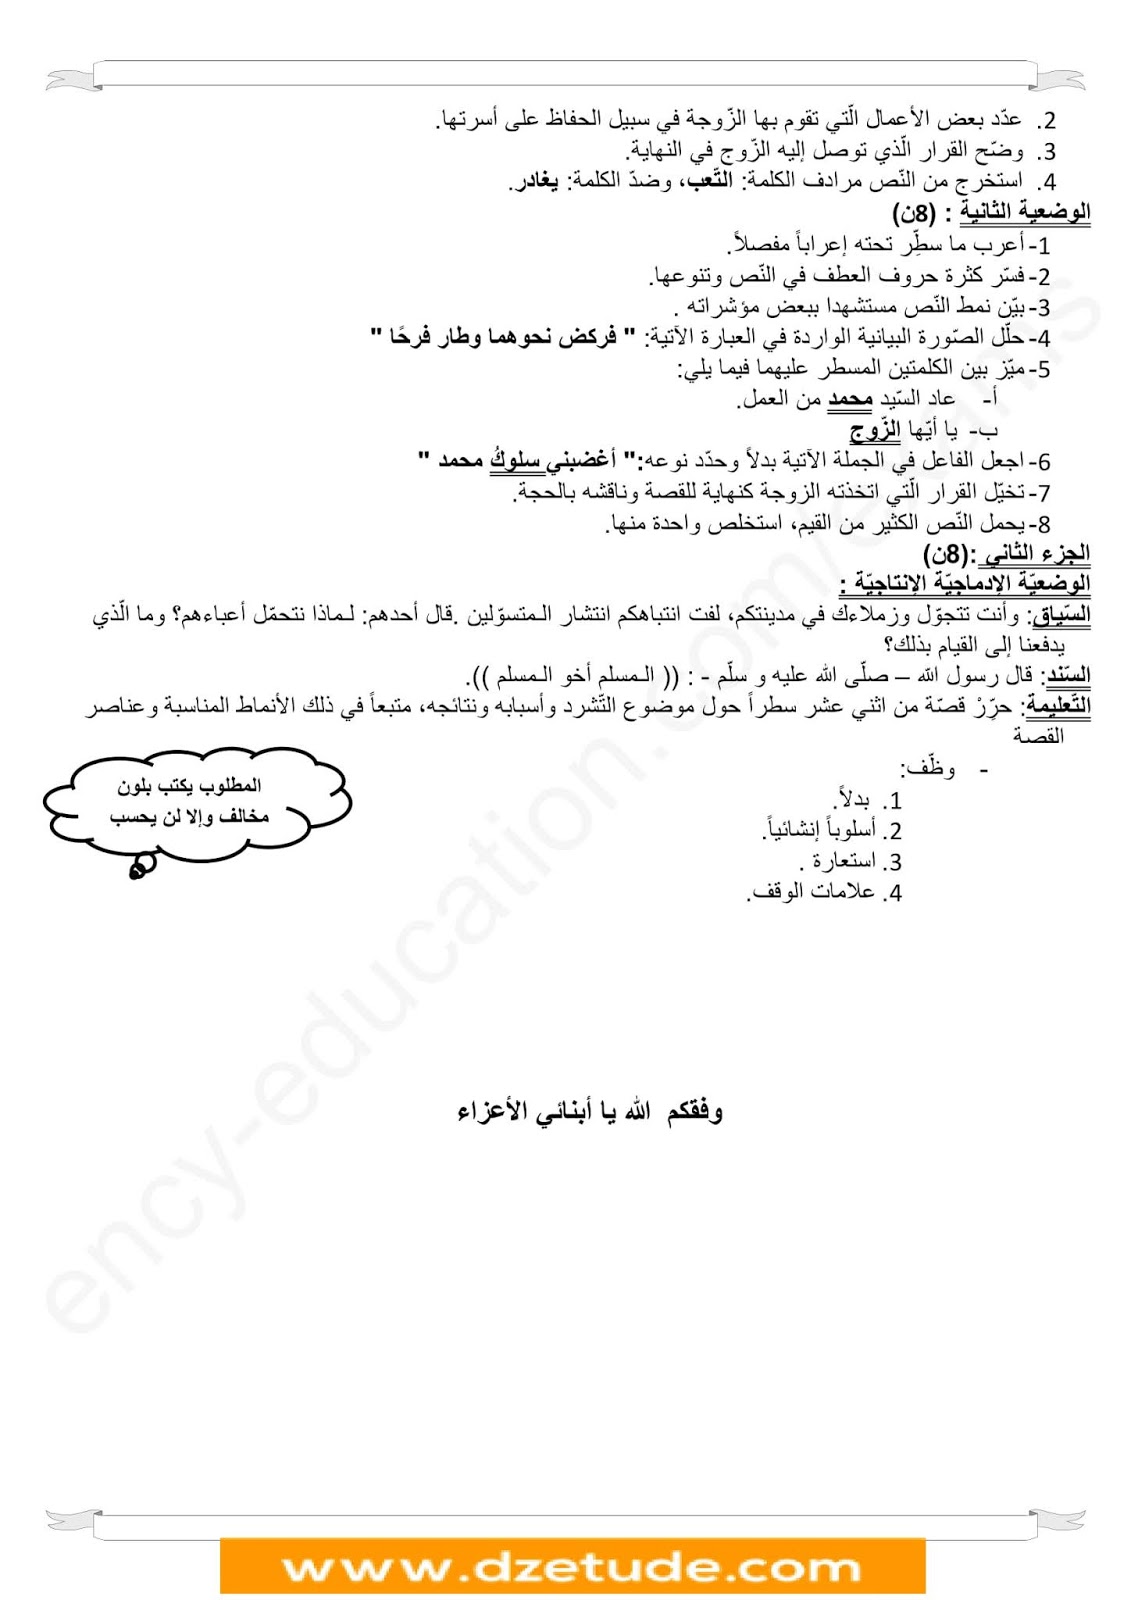 فرض الفصل الأول في اللغة العربية للسنة الرابعة متوسط - الجيل الثاني نموذج 1